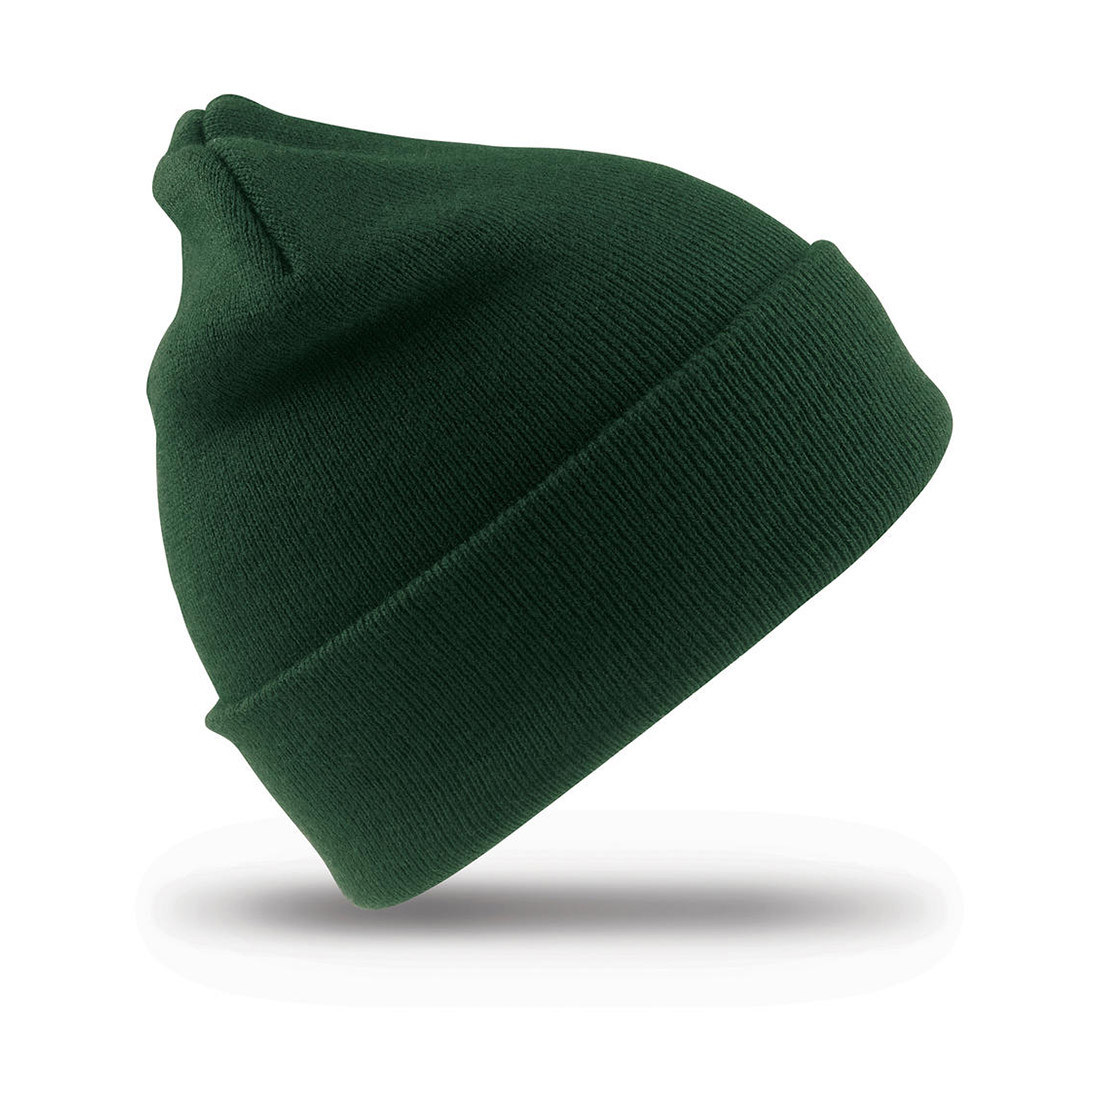 Wolly Ski Cap - Les vêtements de protection